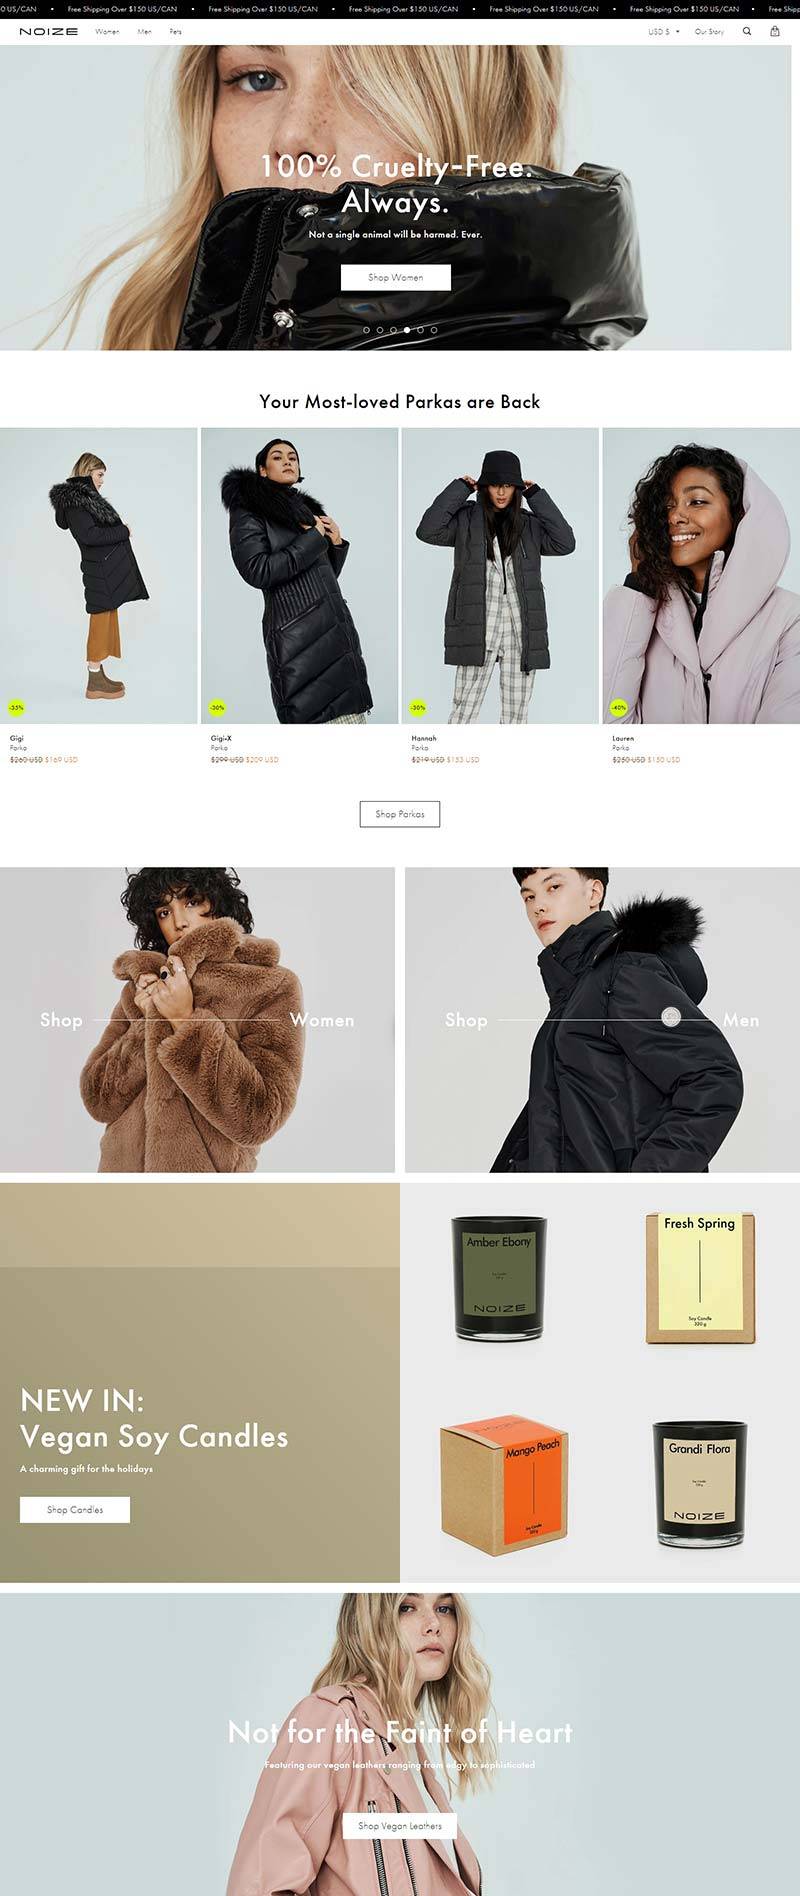 Noize 加拿大品牌服饰购物网站